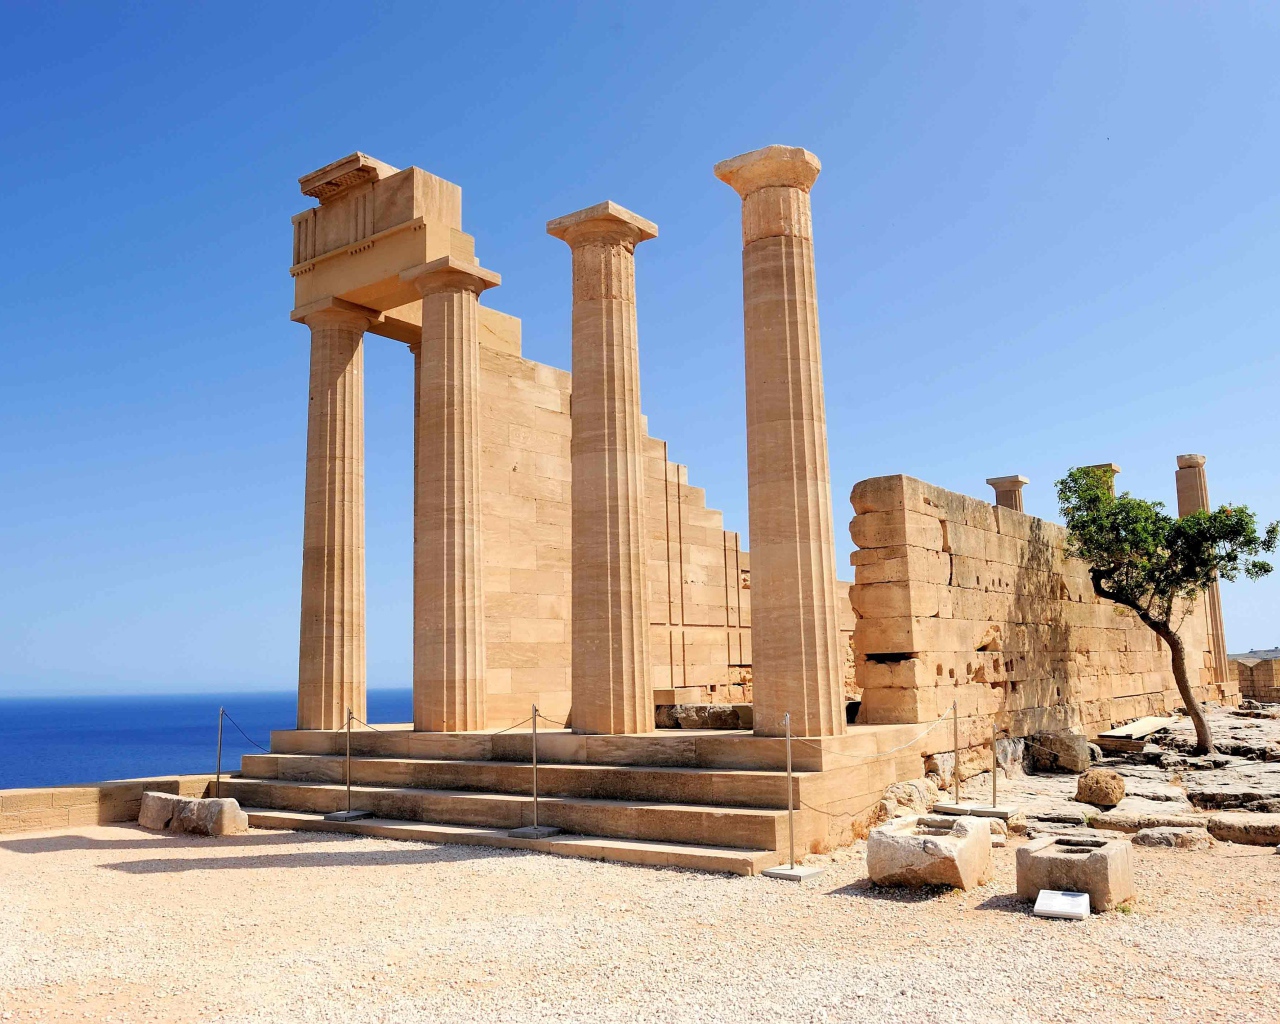 Acropolis in Lindos, Rhodes Island